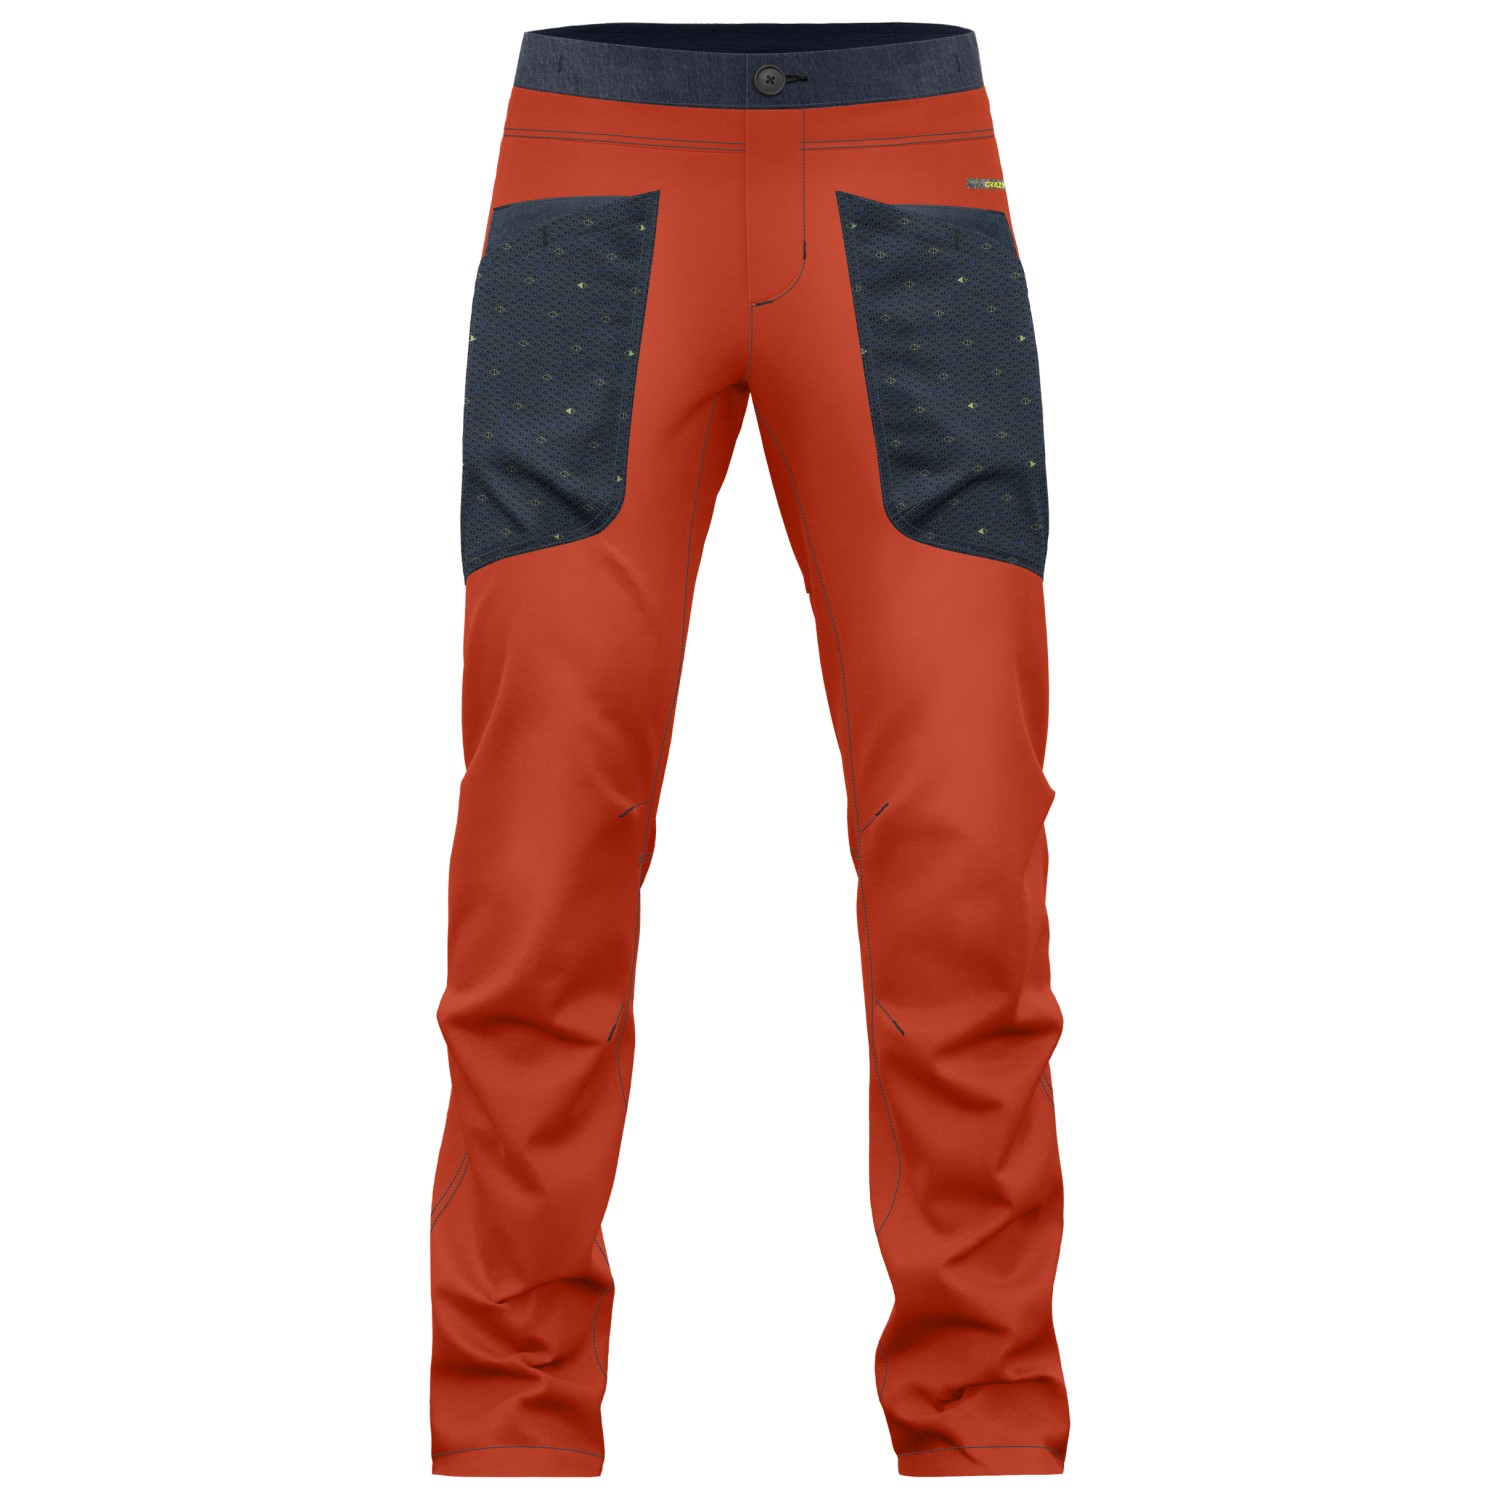 Альпинистские штаны Crazy Idea Pant Gulliver Light, цвет Oriente брюки и джинсы gulliver брюки 12302gmc6304